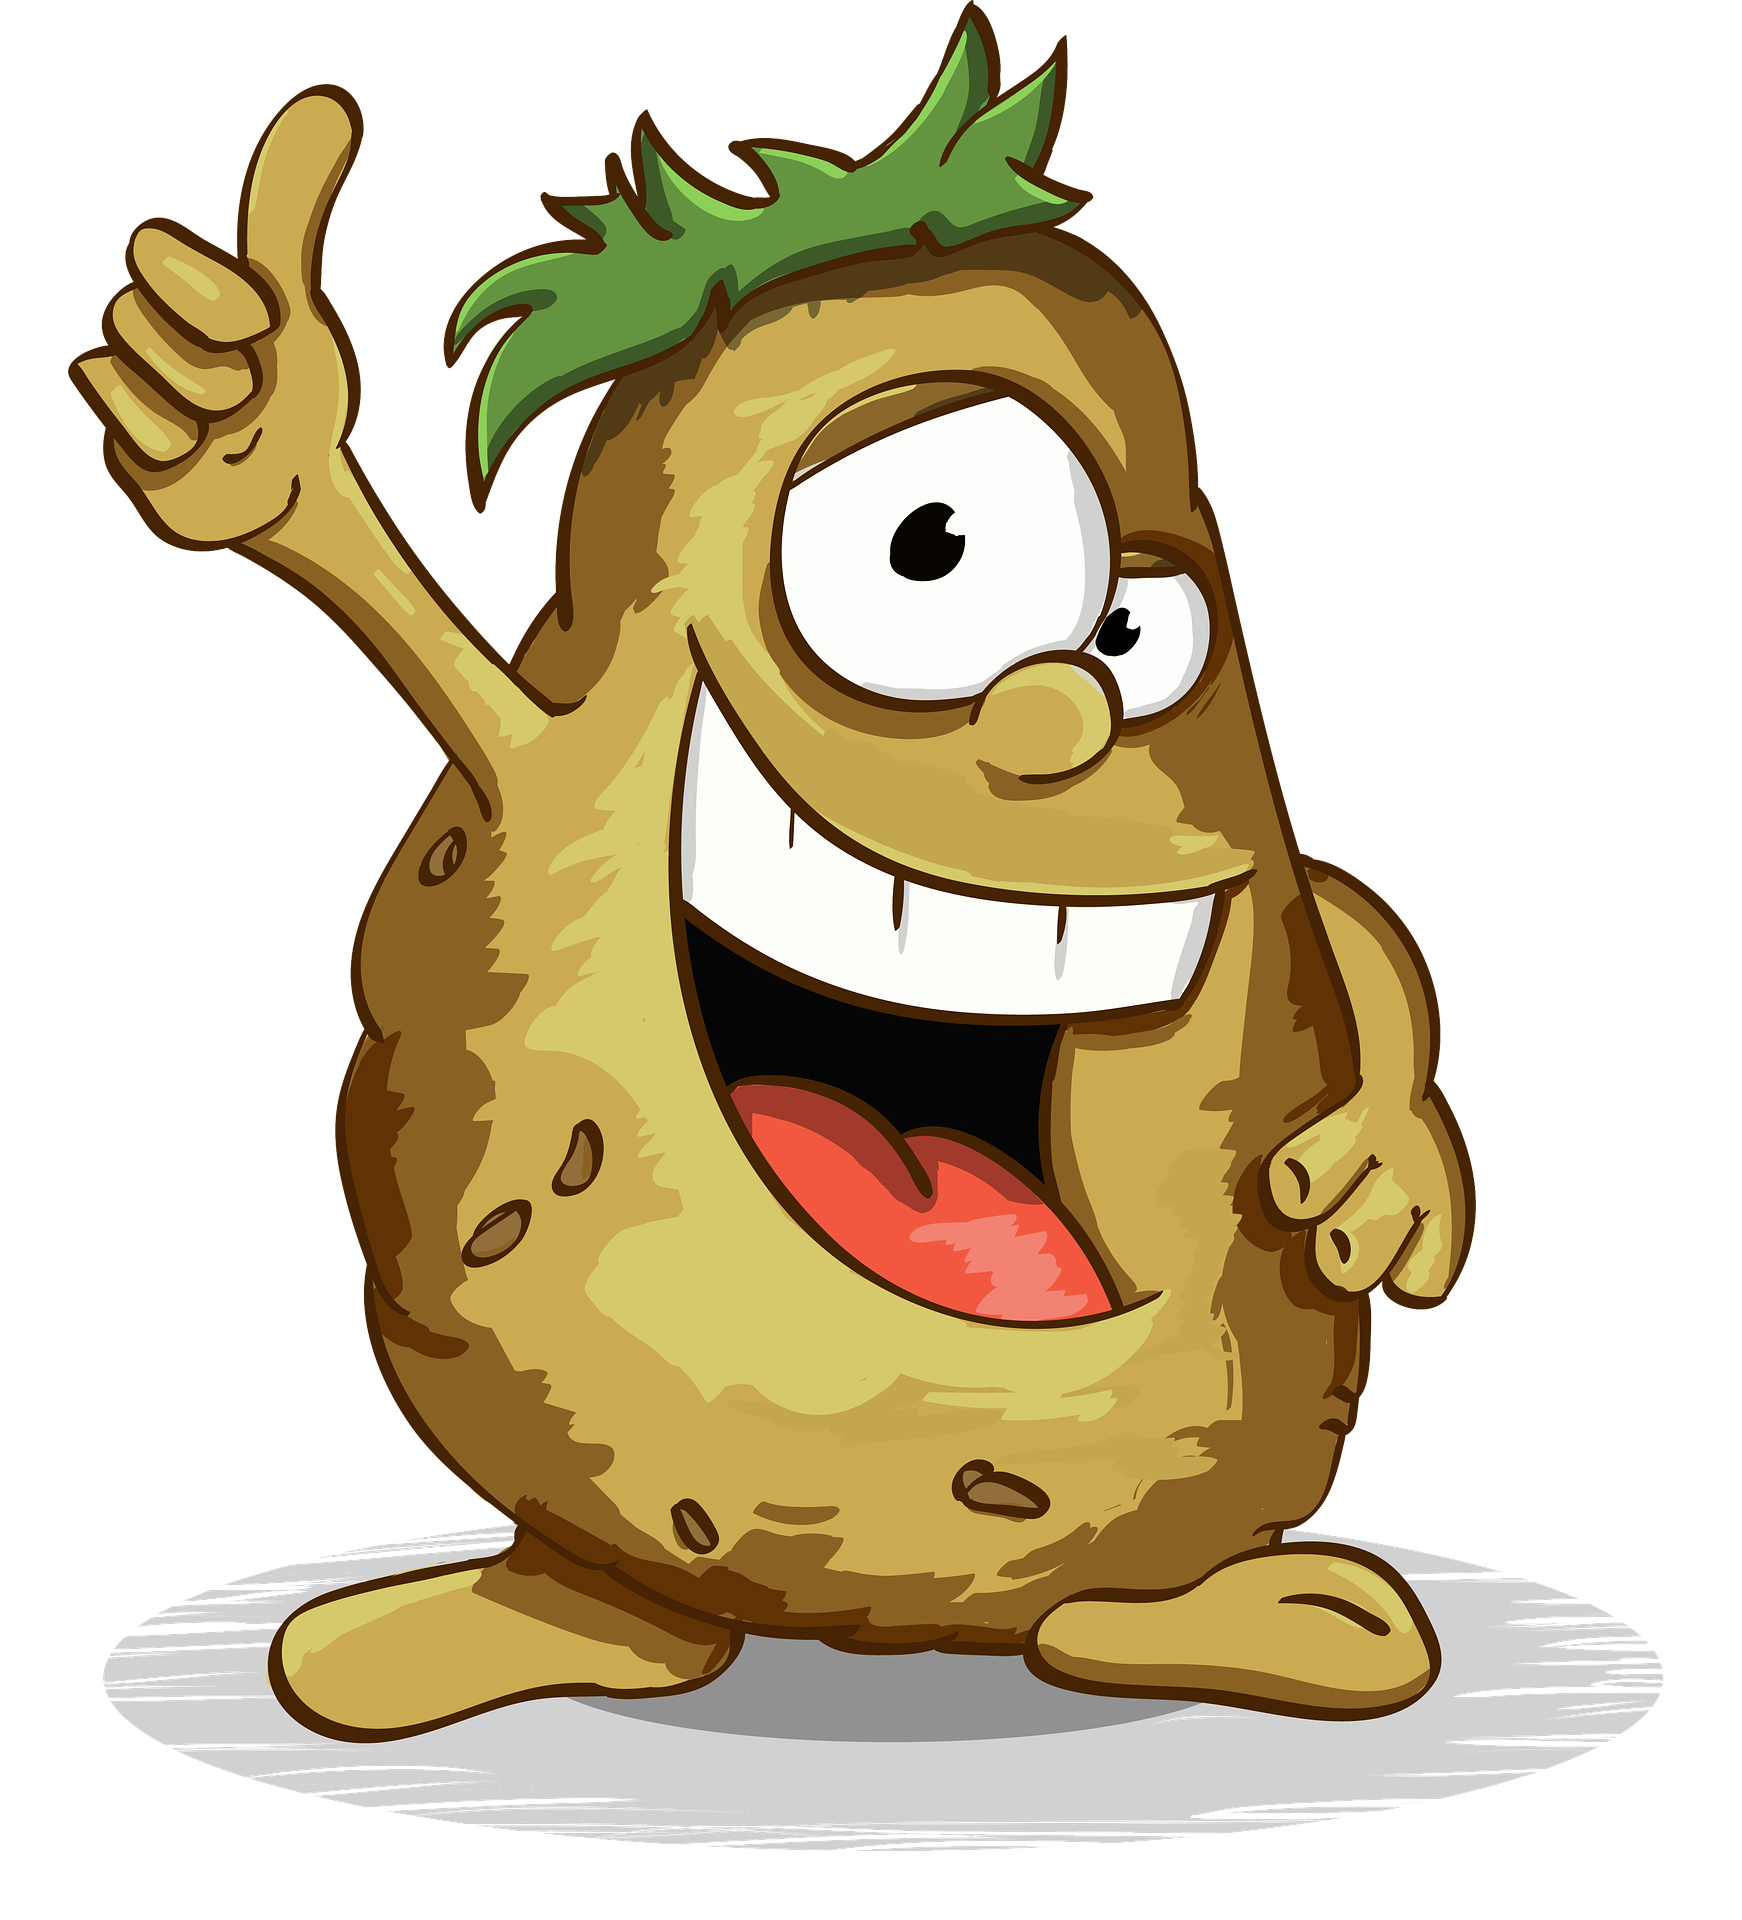 Grafika ilustrująca uśmiechniętego ziemniak